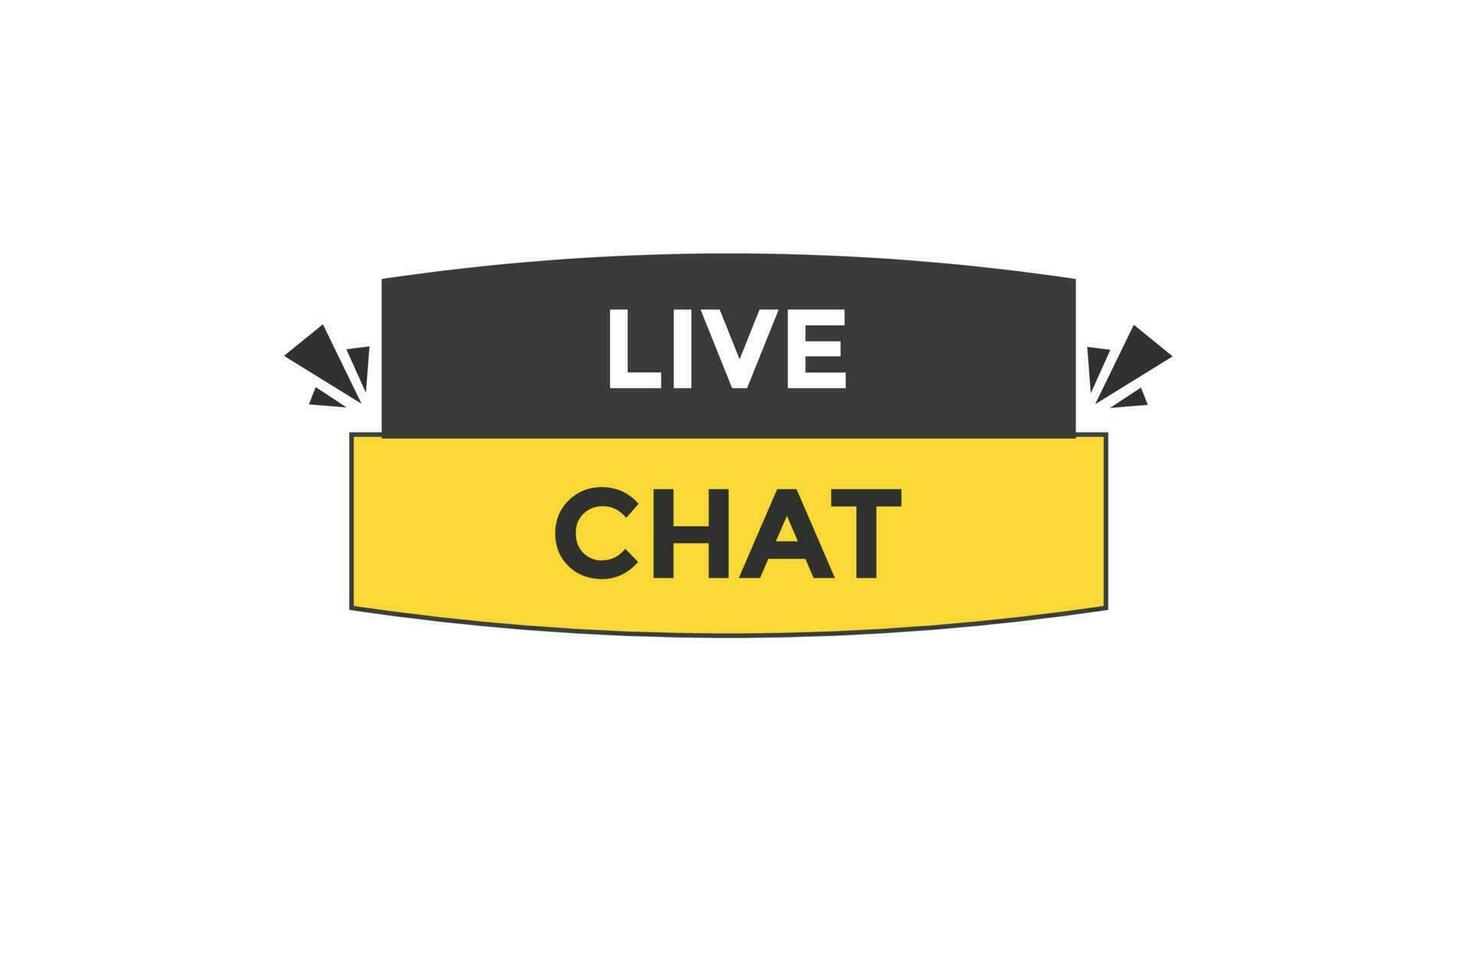 live chat vectors.sign label bubble speech live chat vector